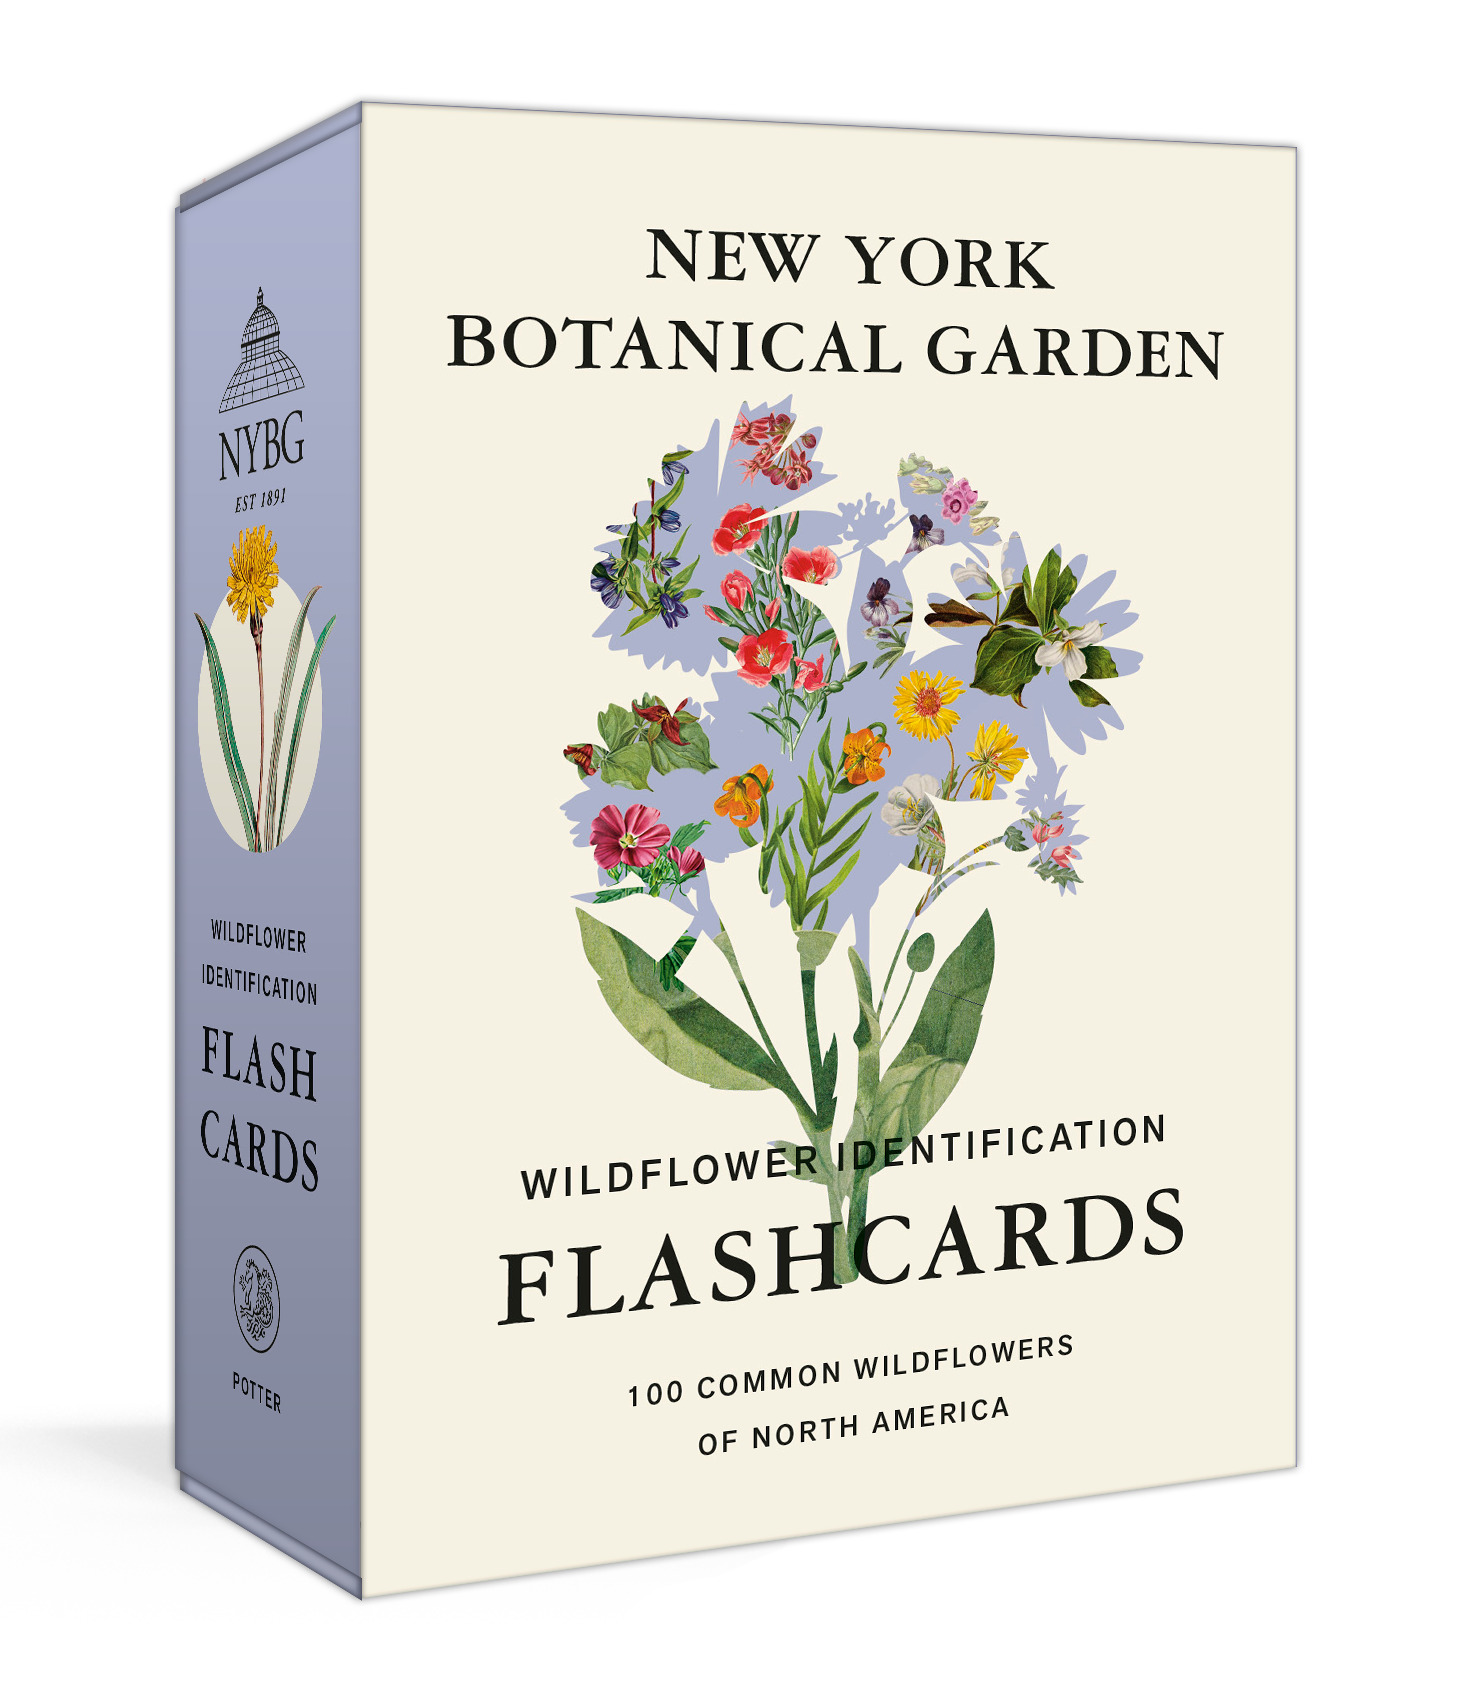 NEW YORK BOTANICAL GARDEN WILDFLOWER IDENTIFICATION FLASHCARDS, by THE NEW YORK BOTANICAL GARDEN